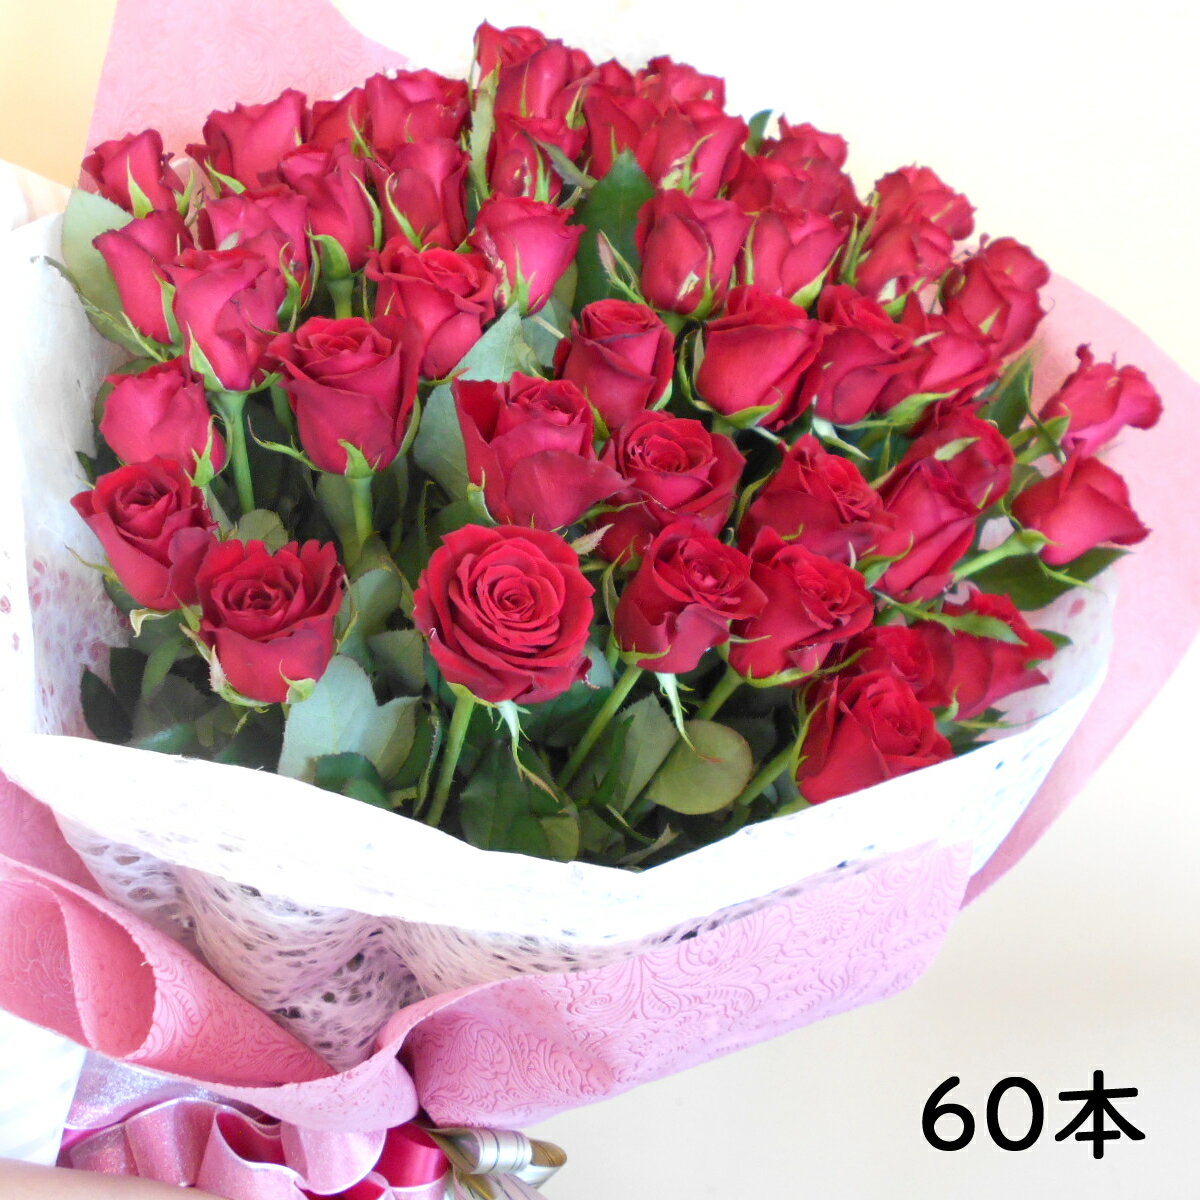 60本のバラ 花門フラワーゲート 花束 還暦用赤バラ 60本 送料無料 生花 ギフト プレゼント 贈答 お祝い 記念日 大切な日 バレンタインデー